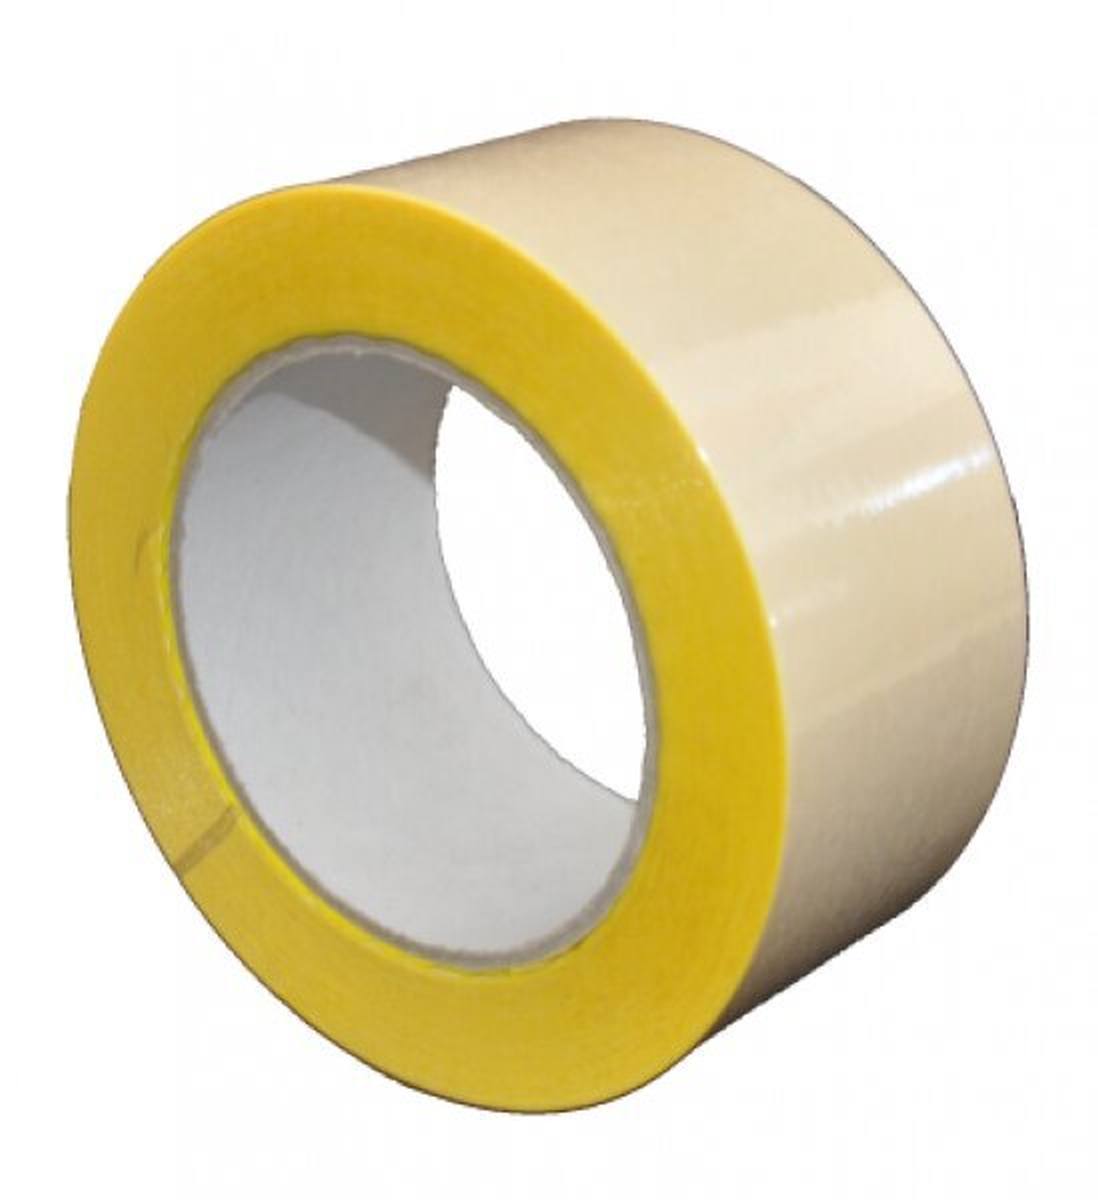 S-K-S 407 Cinta adhesiva de doble cara con soporte de polipropileno, alta / baja adhesividad, amarilla, 200 mm x 50 m, 0,15 mm